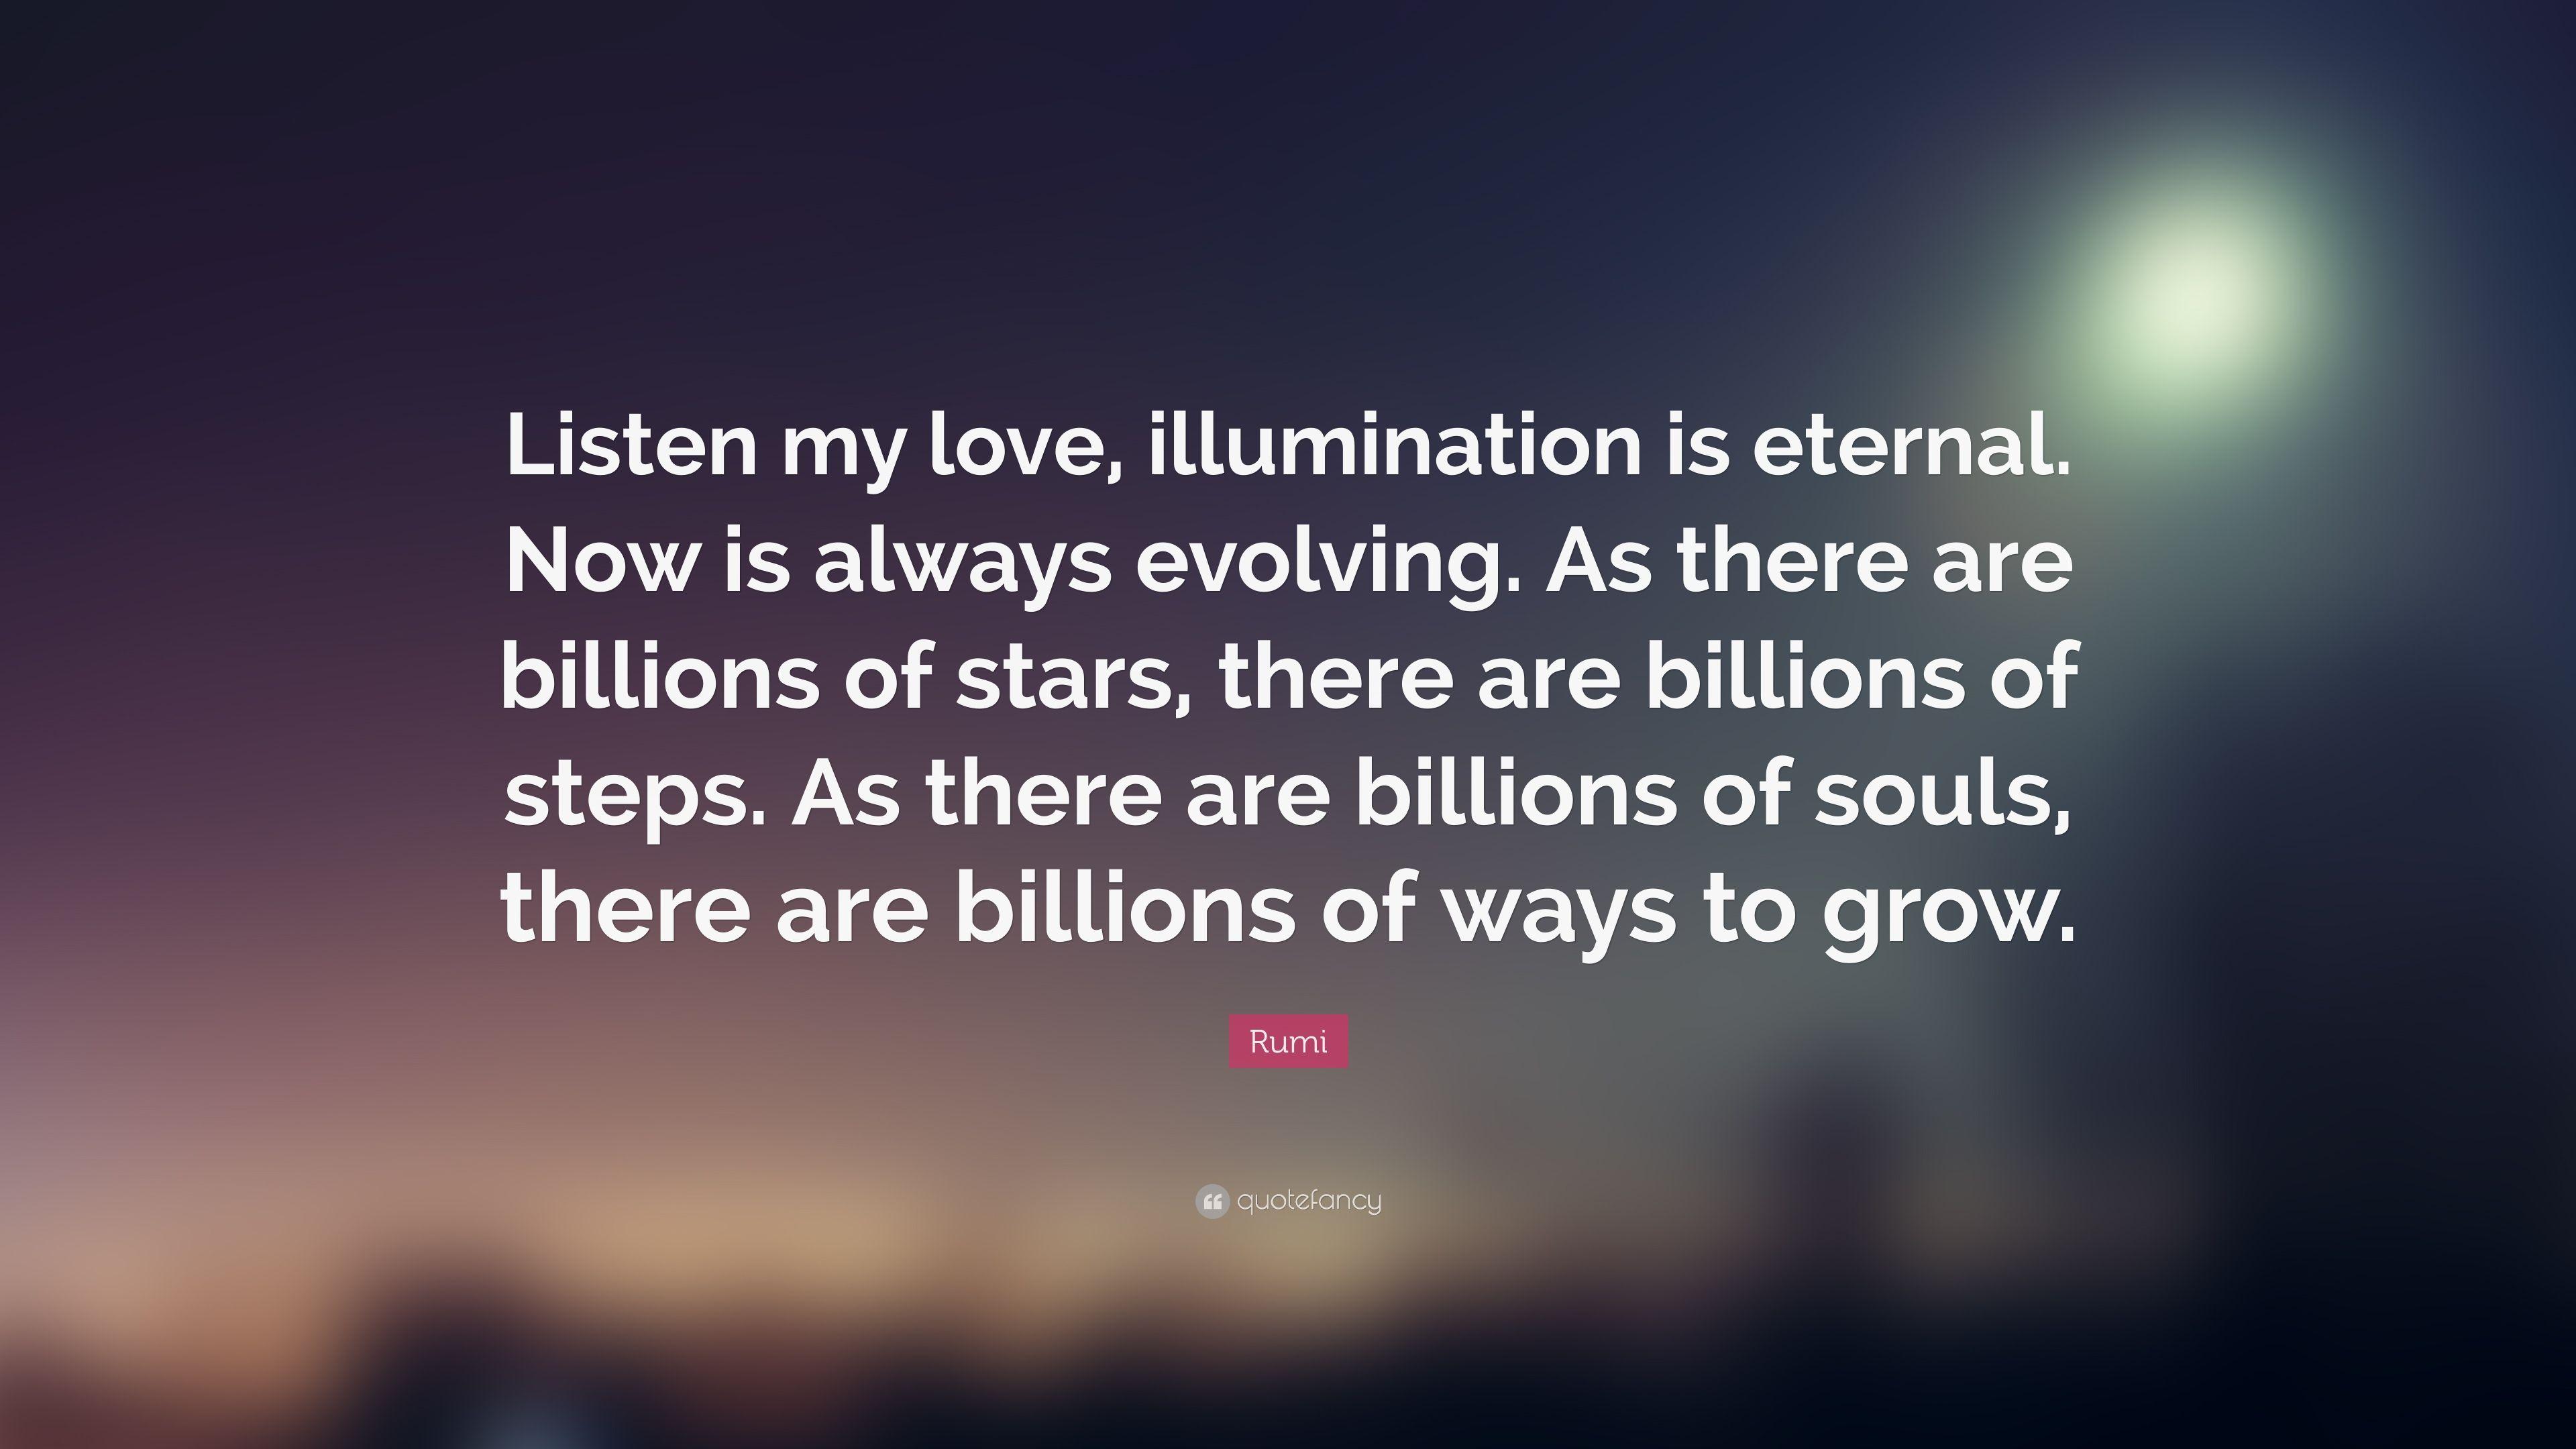 3840x2160 Rumi Trích dẫn: â ???? Hãy lắng nghe tình yêu của tôi, sự chiếu sáng là vĩnh cửu.  Bây giờ là